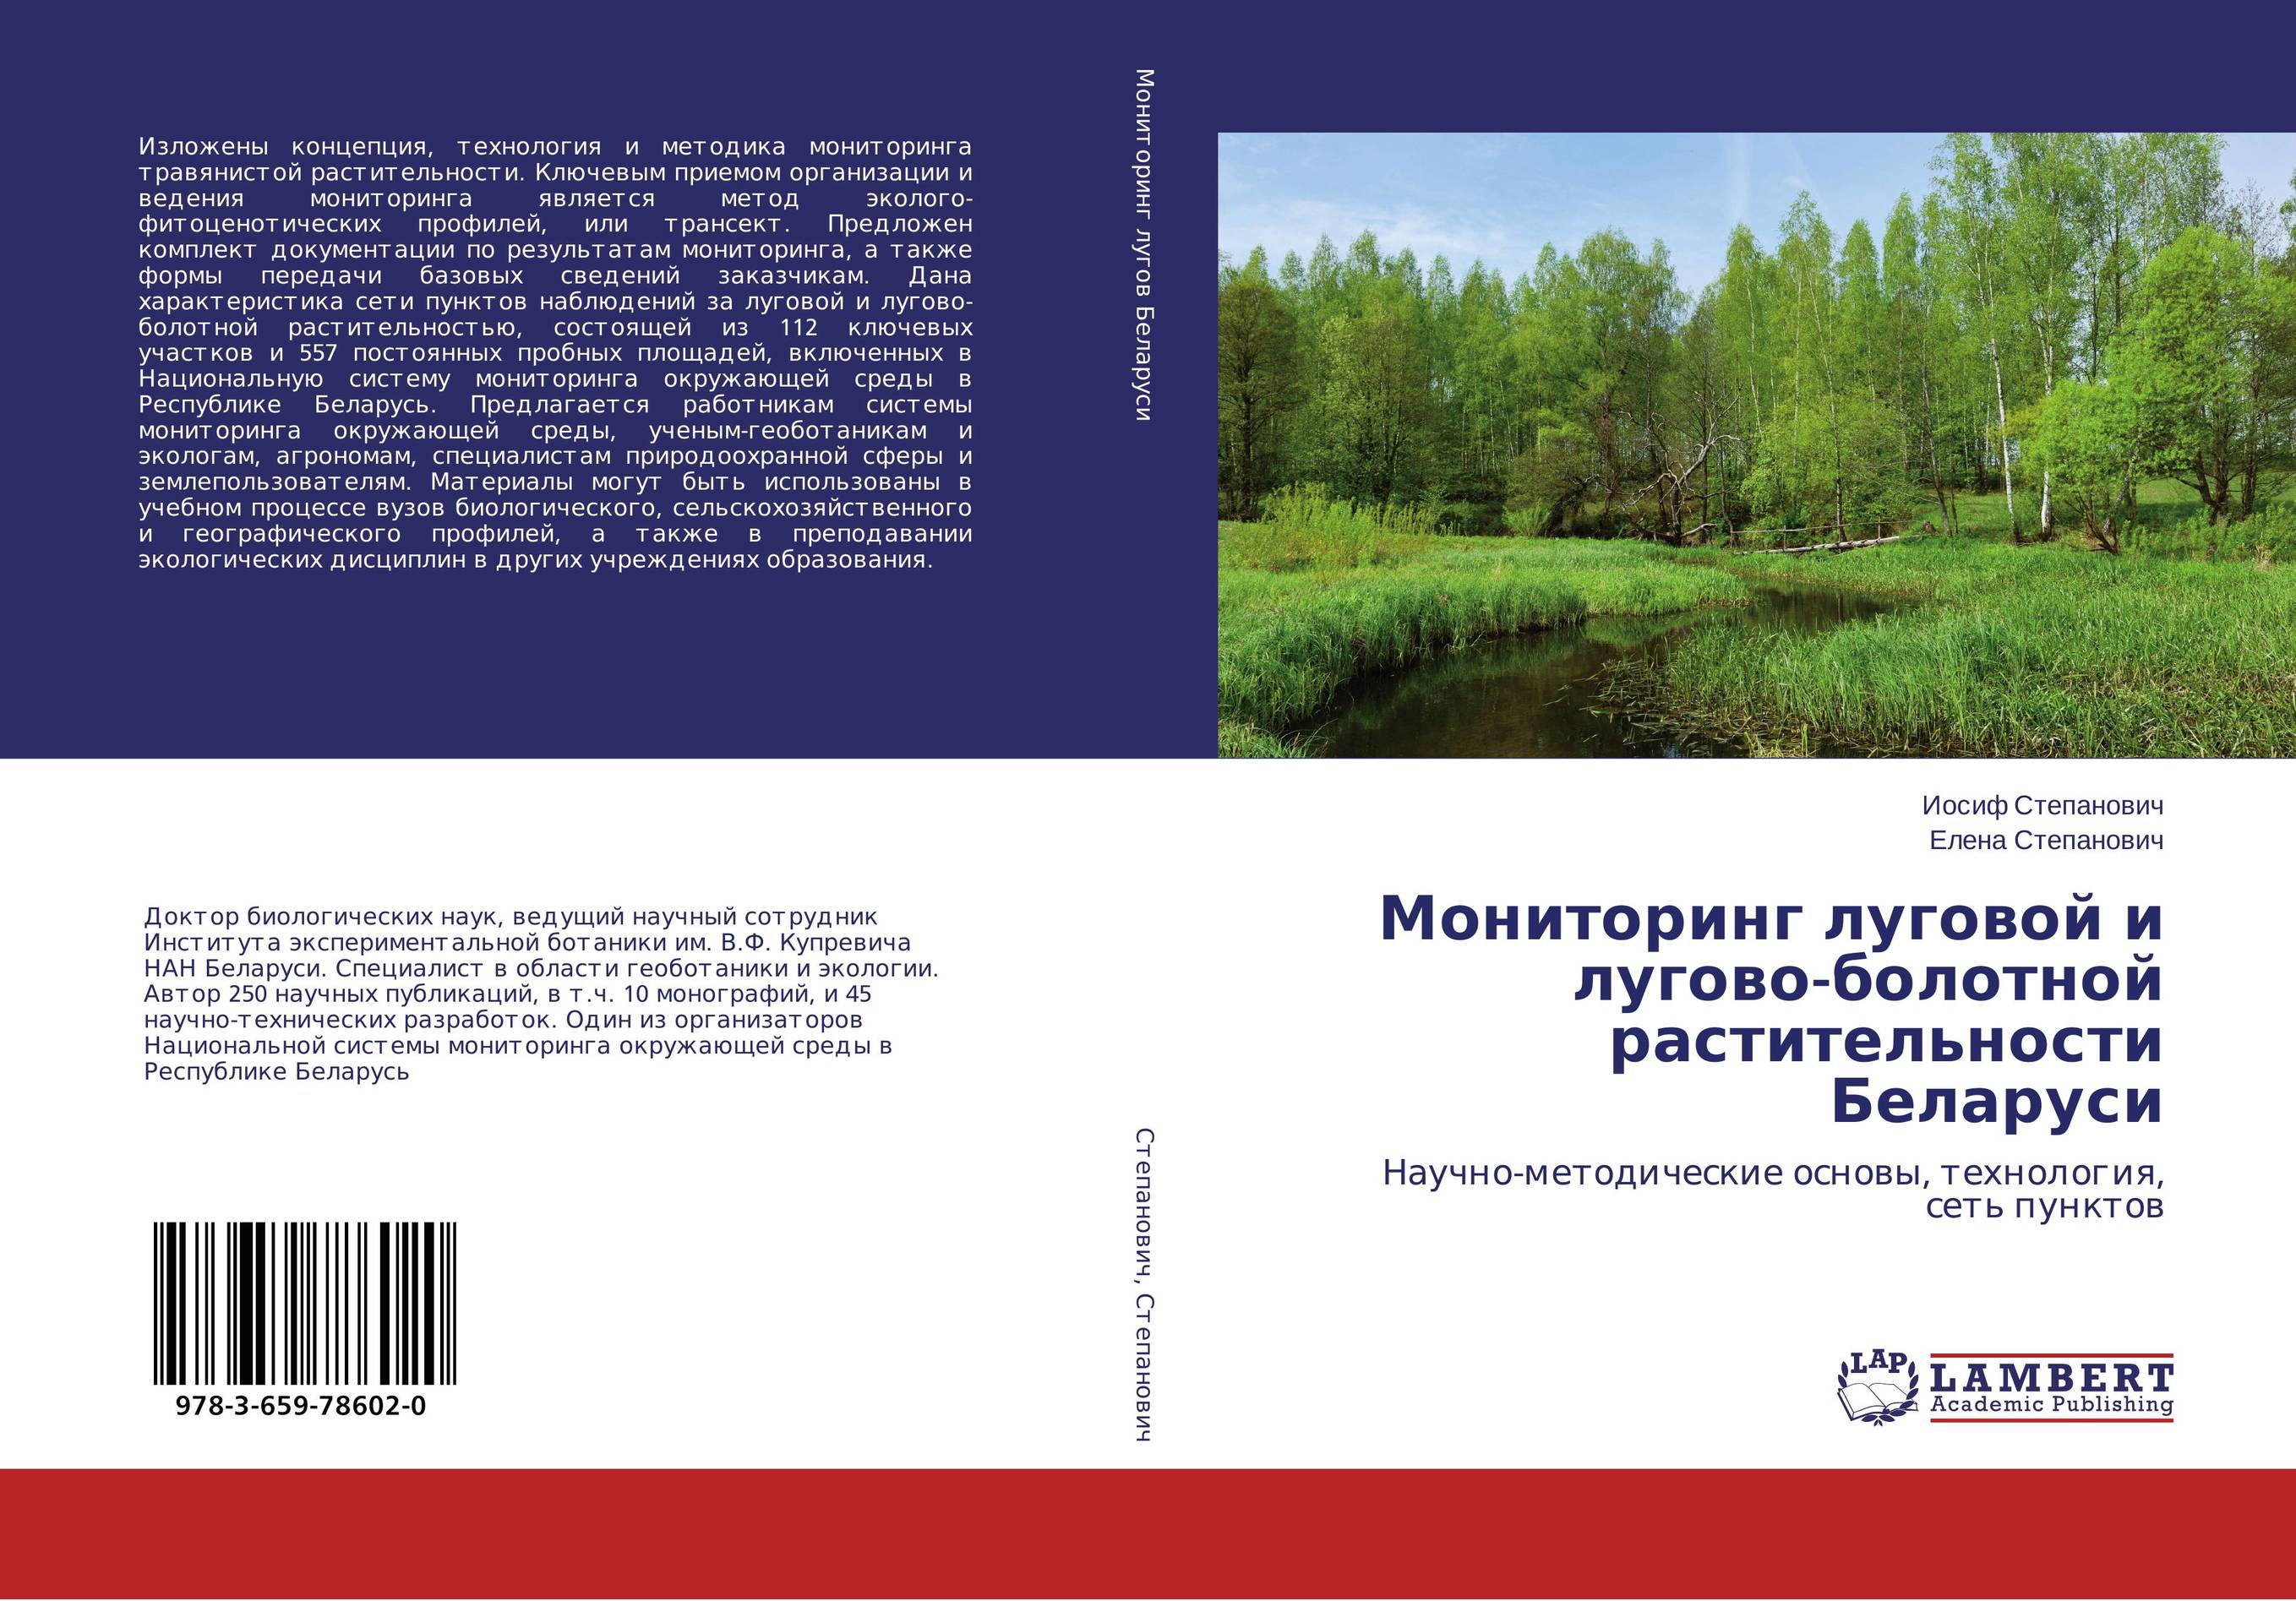 
        Мониторинг луговой и лугово-болотной растительности Беларуси. Научно-методические основы, технология, сеть пунктов.
      